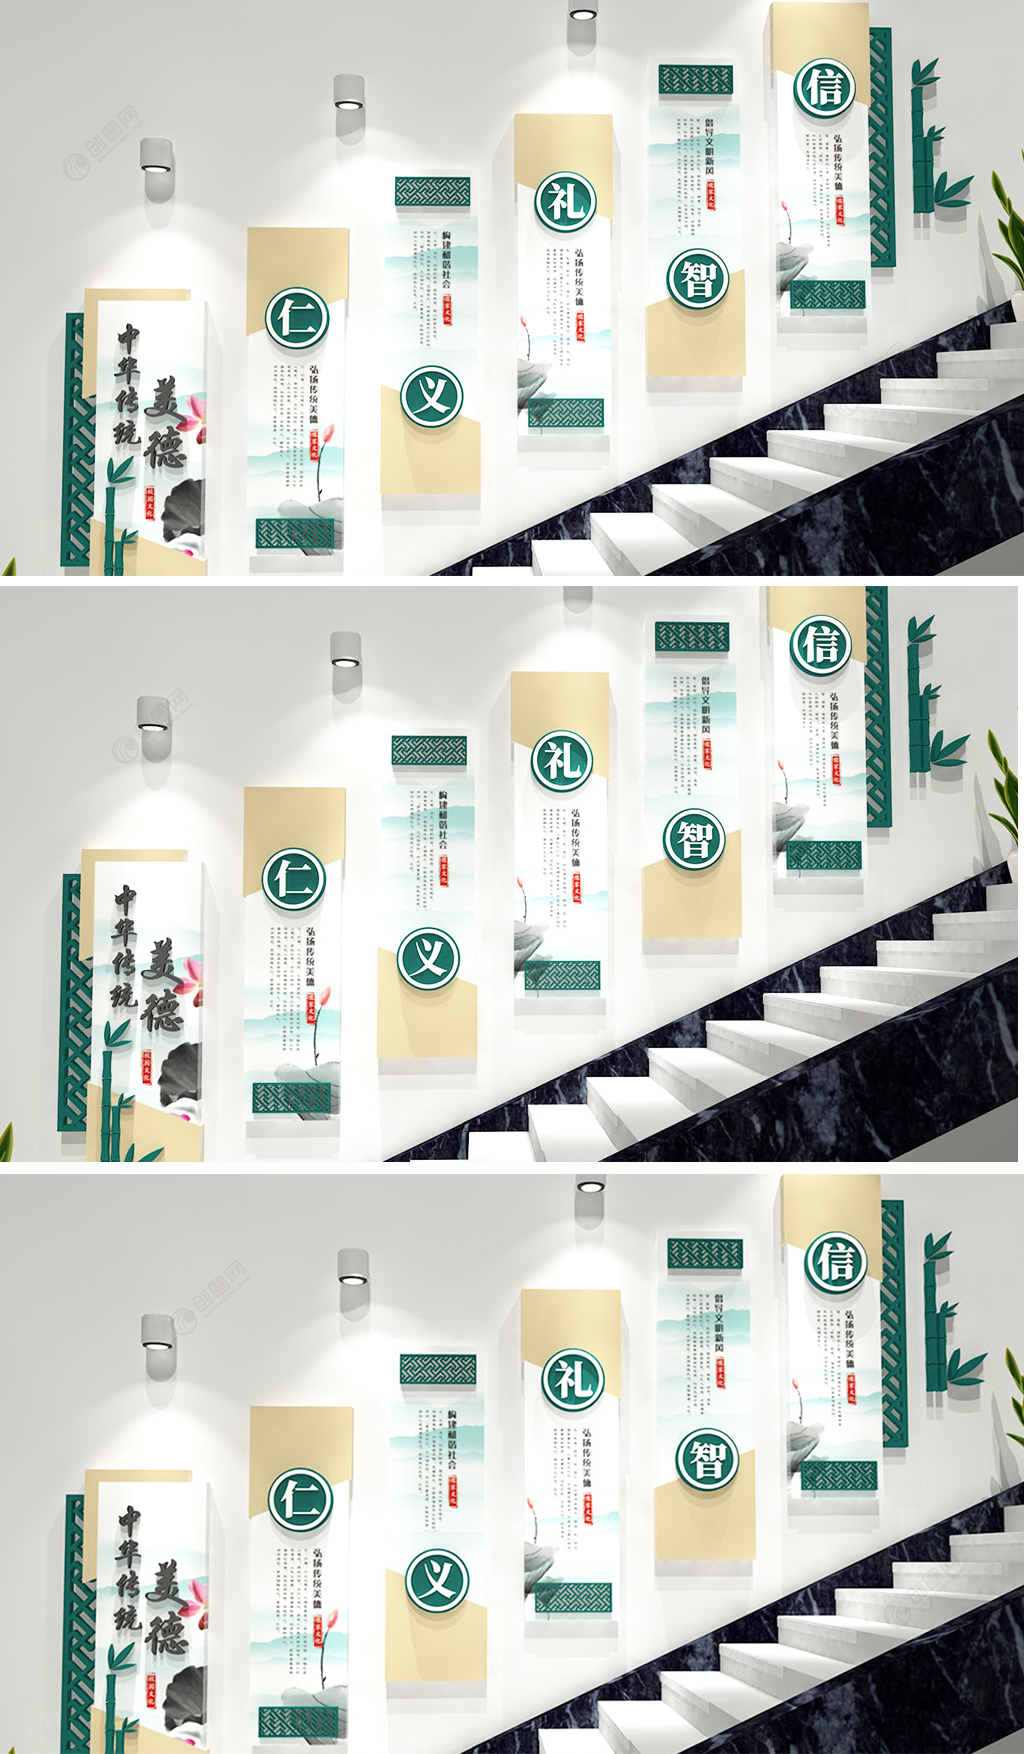 楼梯文化墙之仁义礼智信中华传统美德文化墙设计